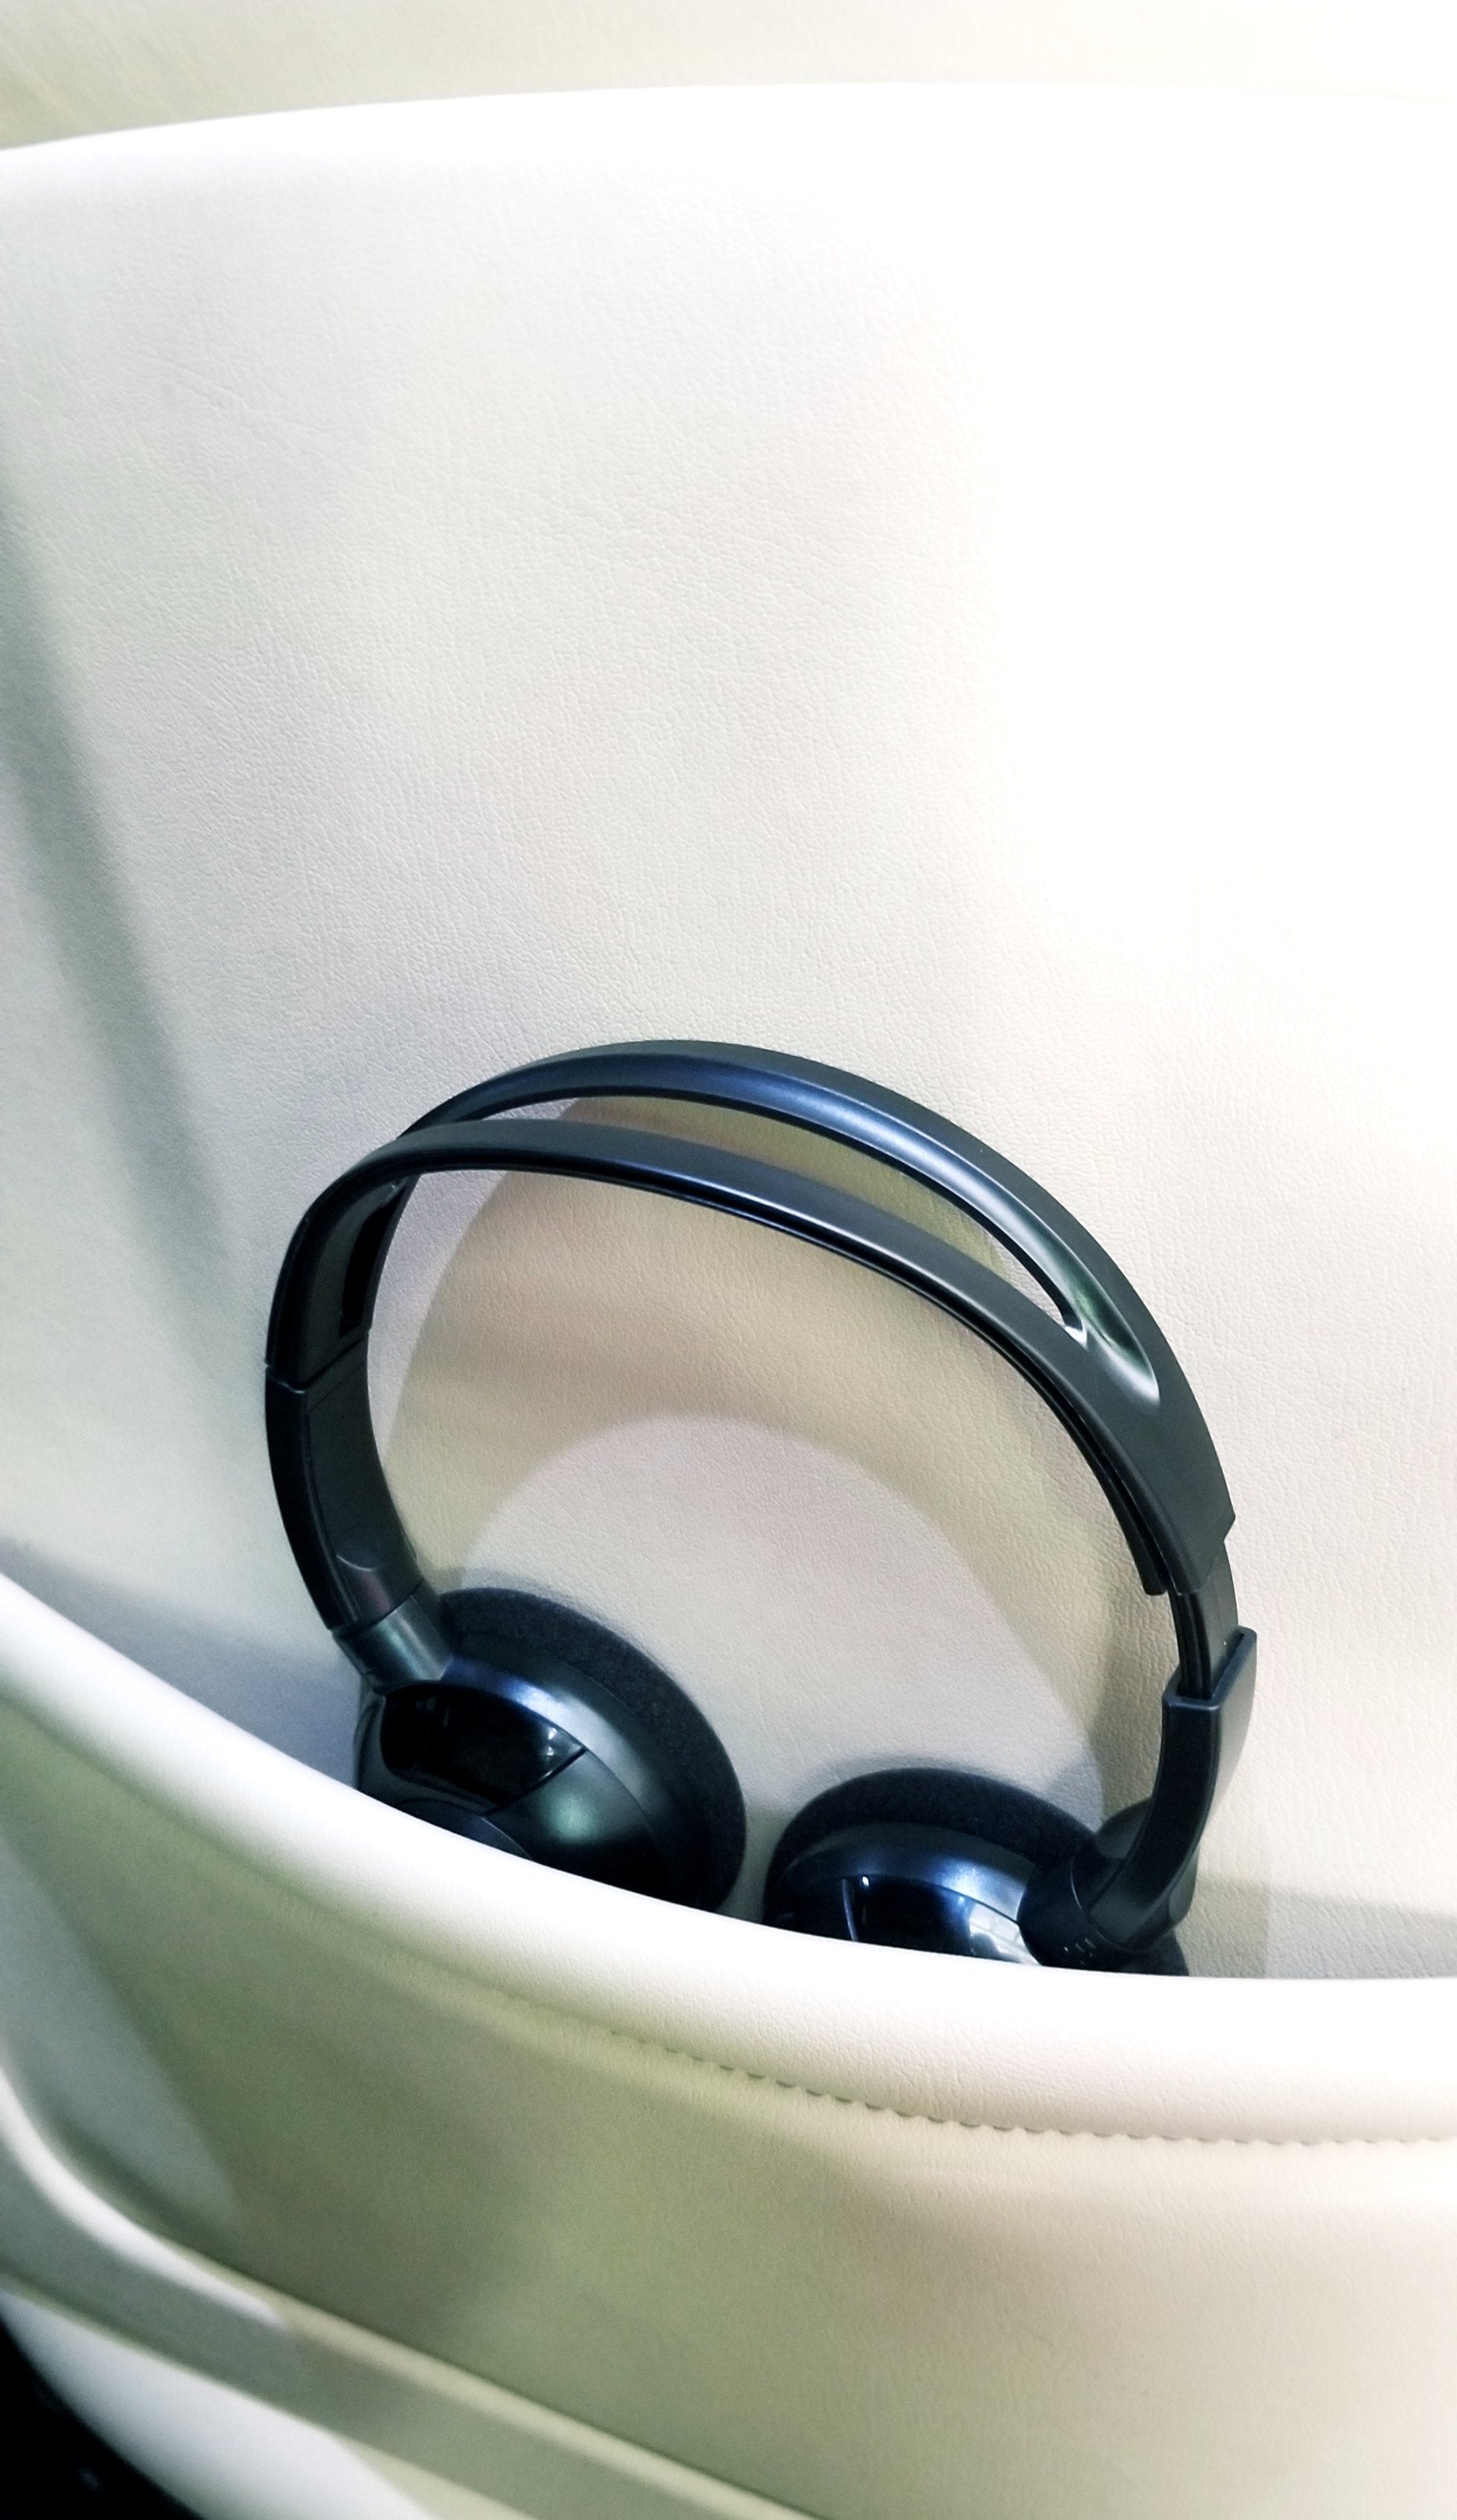 2017 GMC Savana Wireless DVD Headphone